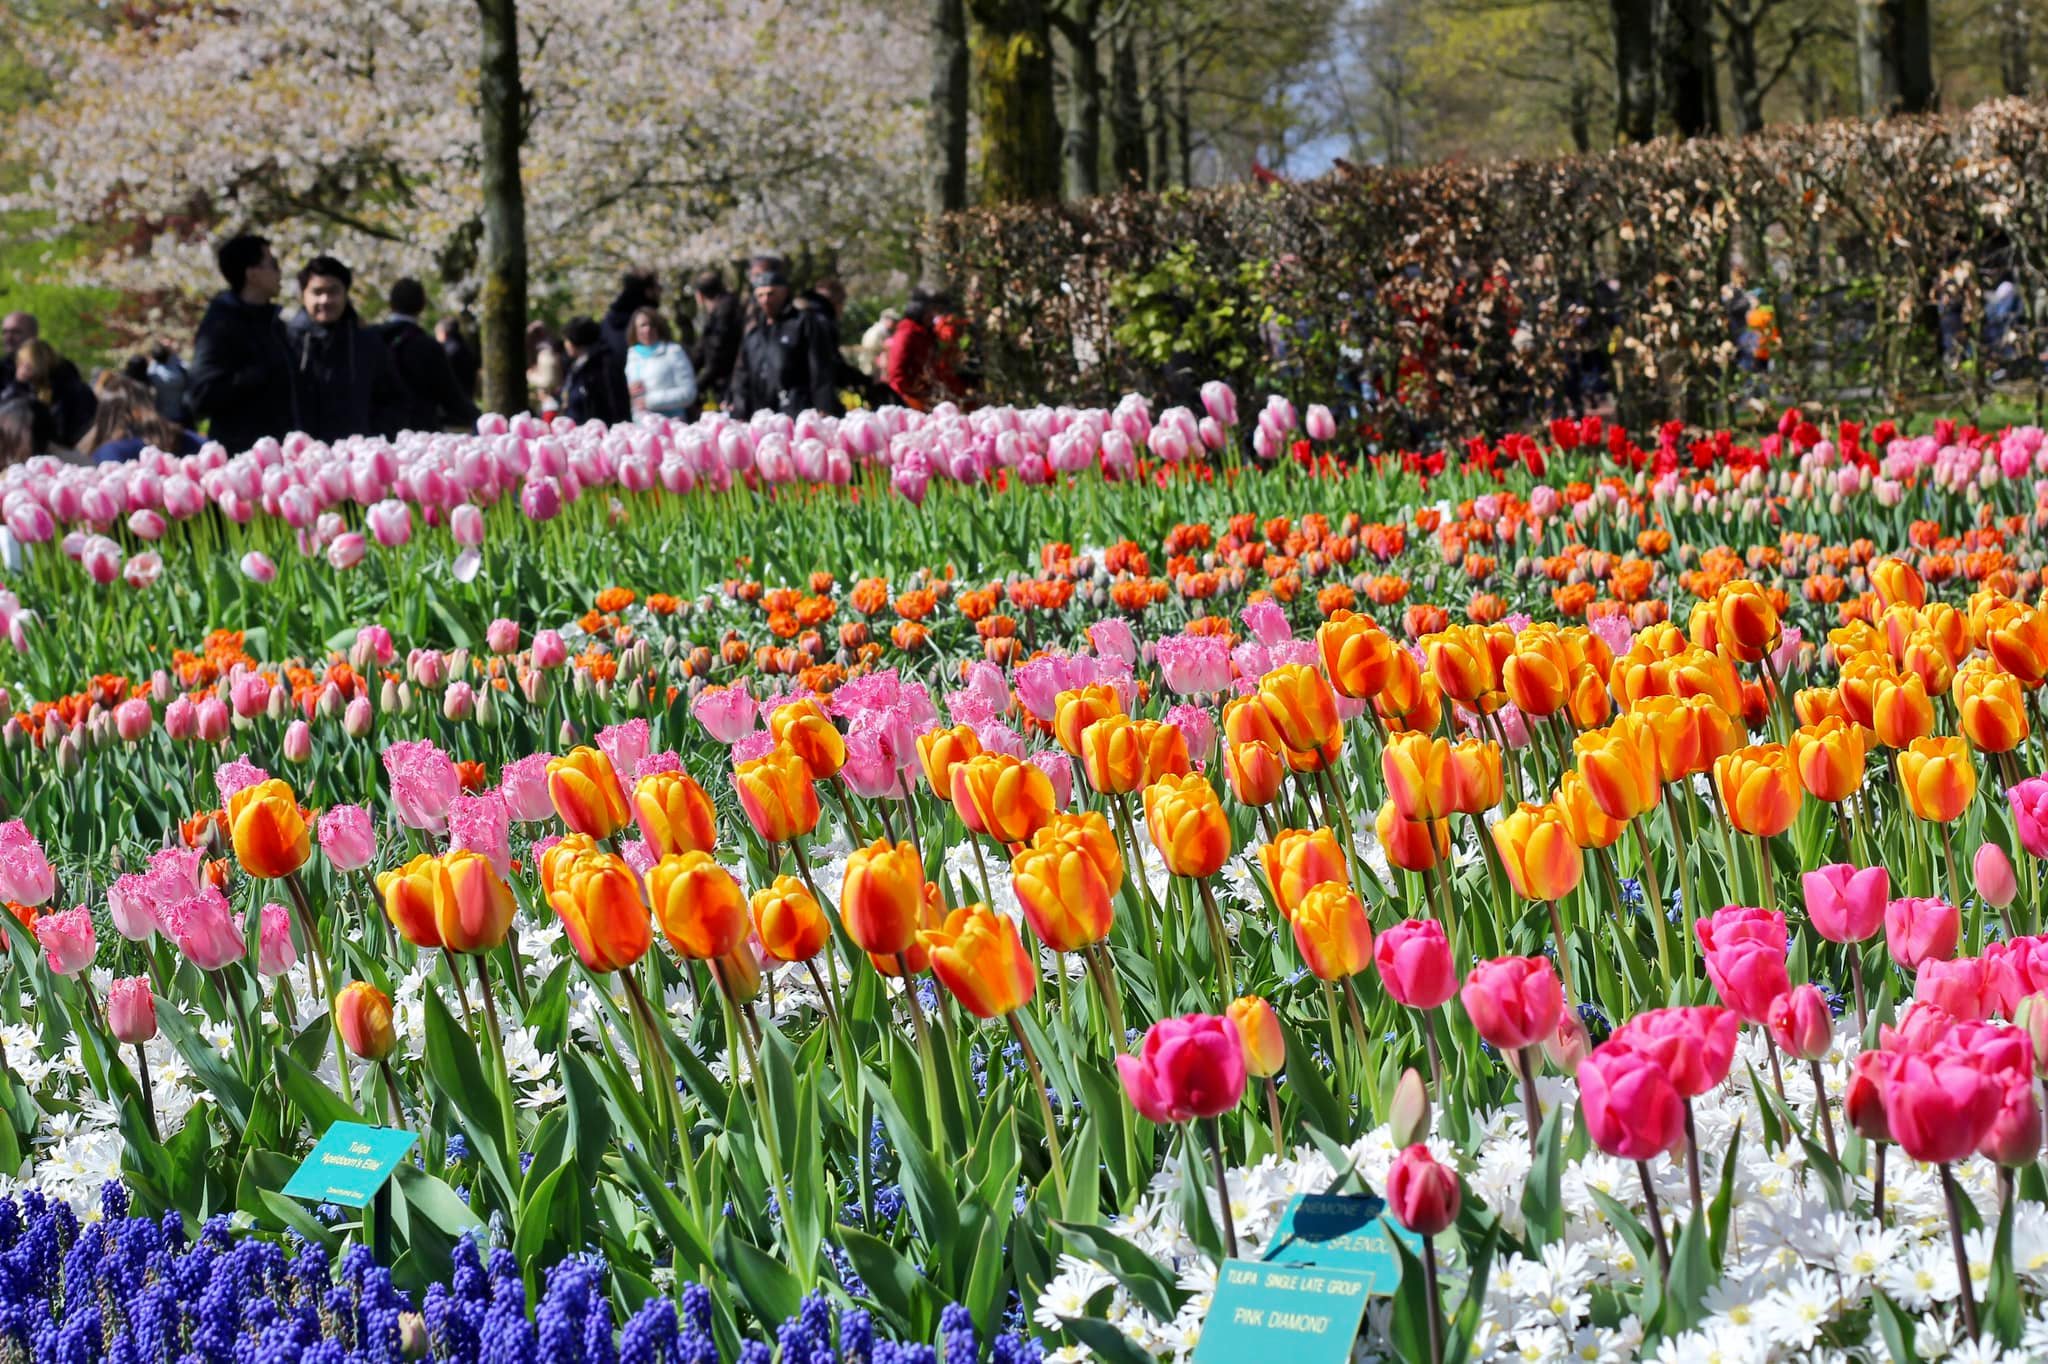 Trải nghiệm lần đầu đến Hà Lan ngắm hoa tulip nở rực rỡ